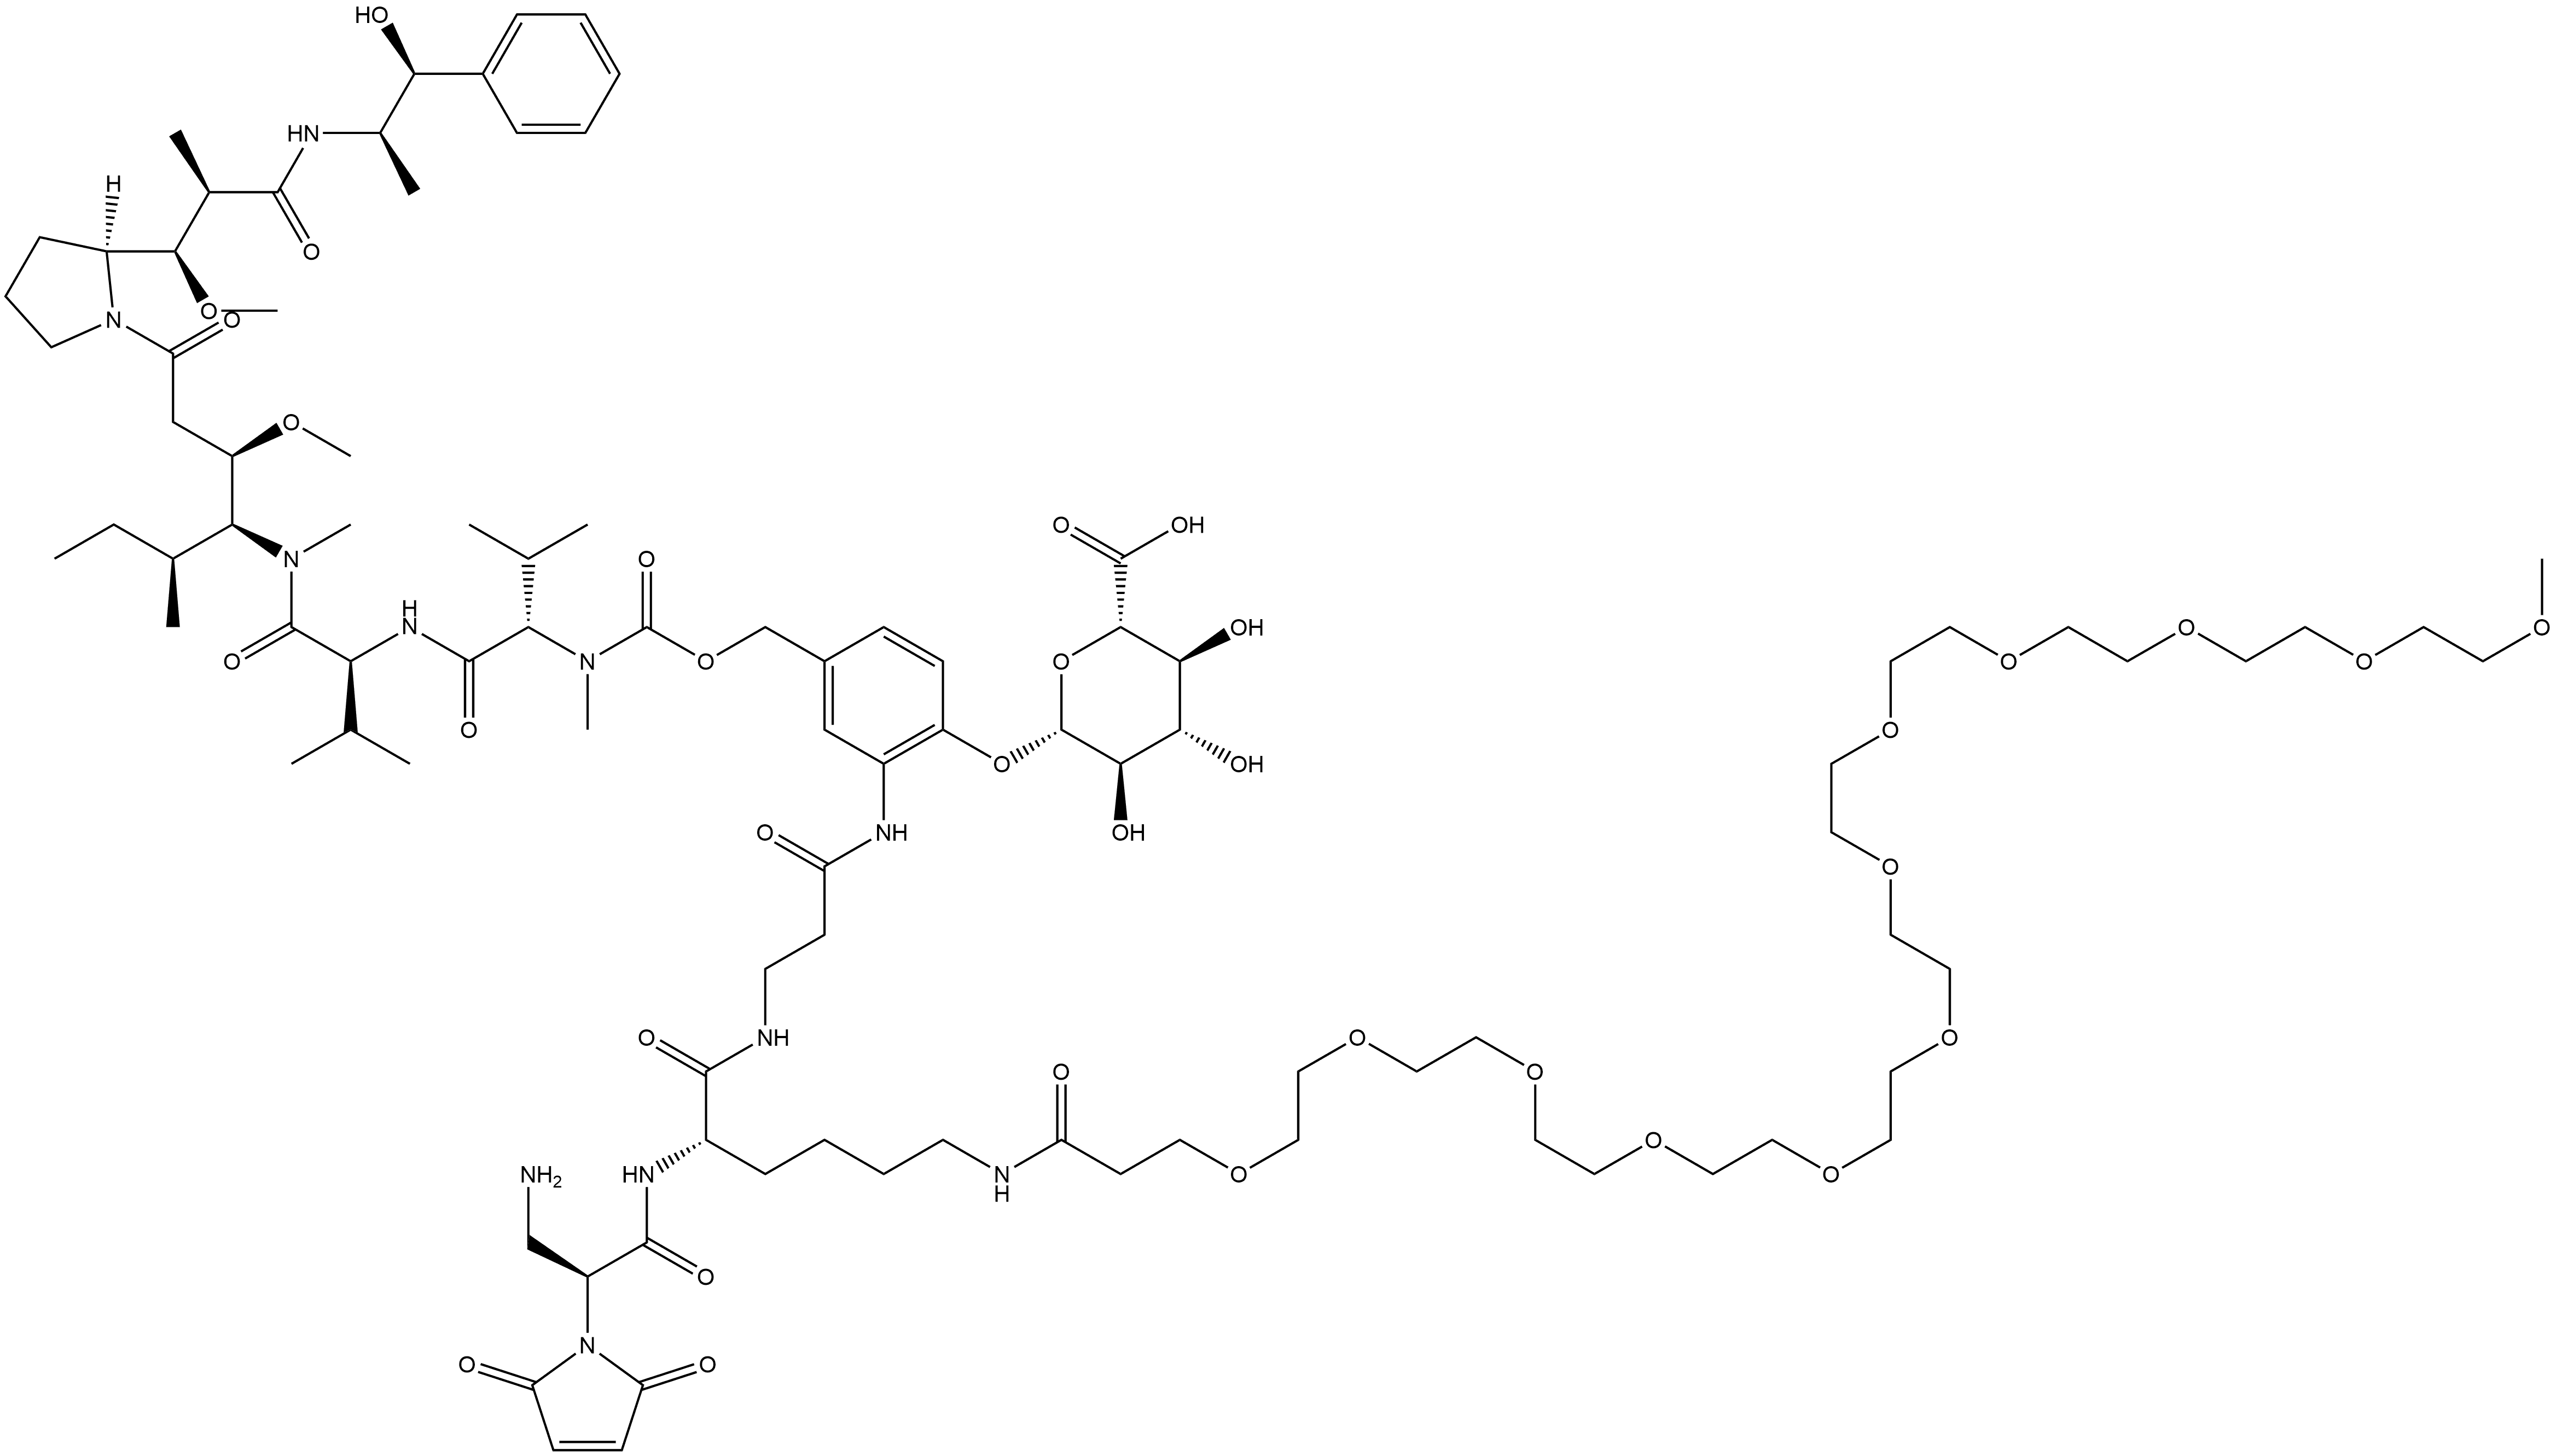 L-Valinamide, N-[[[3-[[(2S)-2-(2,5-dihydro-2,5-dioxo-1H-pyrrol-1-yl)-β-alanyl-N6-(1-oxo-4,7,10,13,16,19,22,25,28,31,34,37-dodecaoxaoctatriacont-1-yl)-L-lysyl-β-alanyl]amino]-4-(β-D-glucopyranuronosyloxy)phenyl]methoxy]carbonyl]-N-methyl-L-valyl-N-[(1S,2R)-4-[(2S)-2-[(1R,2R)-3-[[(1R,2S)-2-hydroxy-1-methyl-2-phenylethyl]amino]-1-methoxy-2-methyl-3-oxopropyl]-1-pyrrolidinyl]-2-methoxy-1-[(1S)-1-methylpropyl]-4-oxobutyl]-N-methyl- Structure